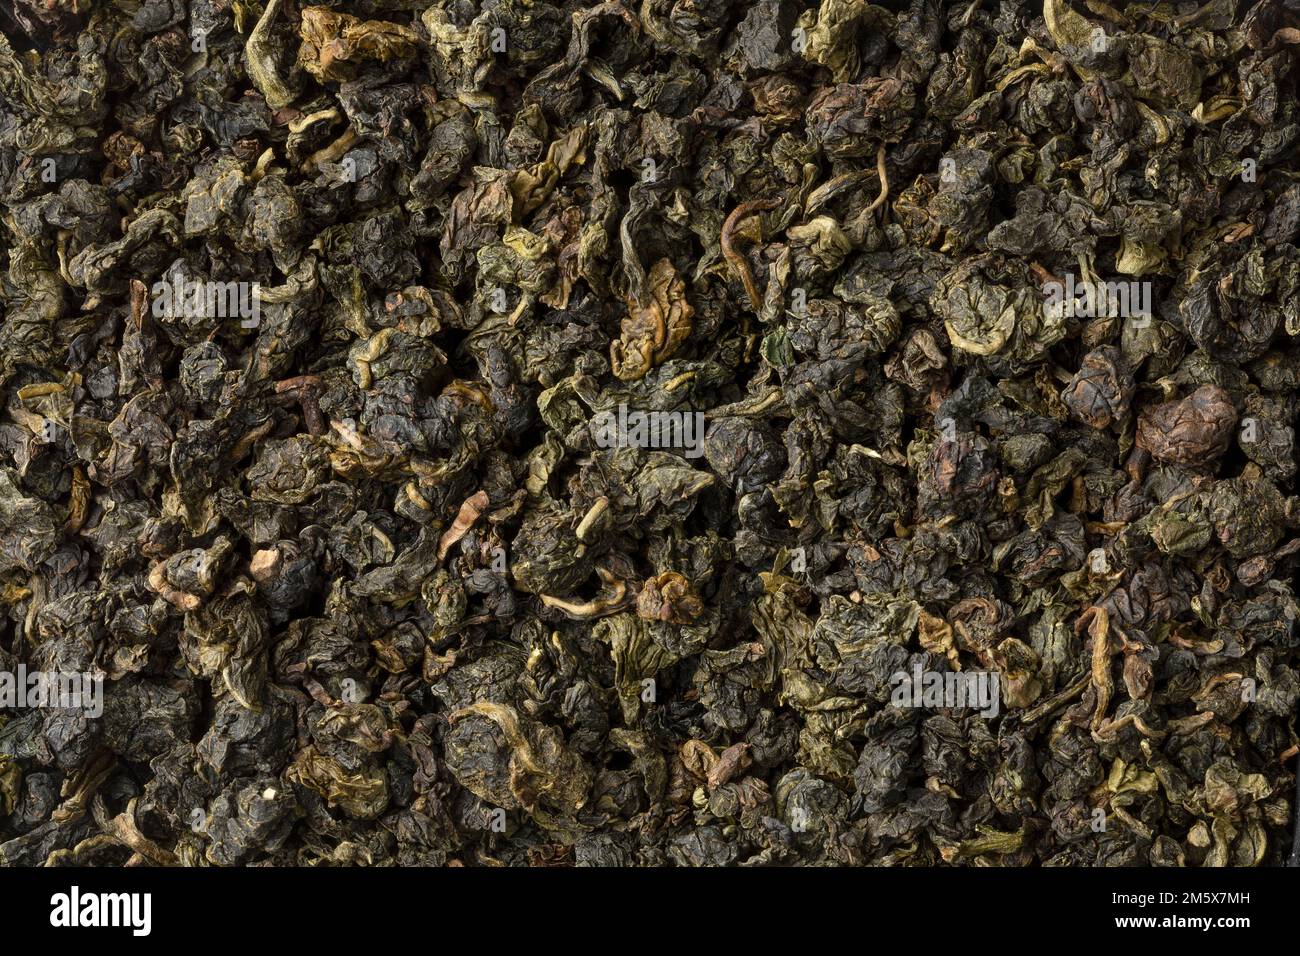 Chinois Ti Kuan Yin thé oolong bio feuilles de thé séchées gros plan plein cadre comme arrière-plan Banque D'Images